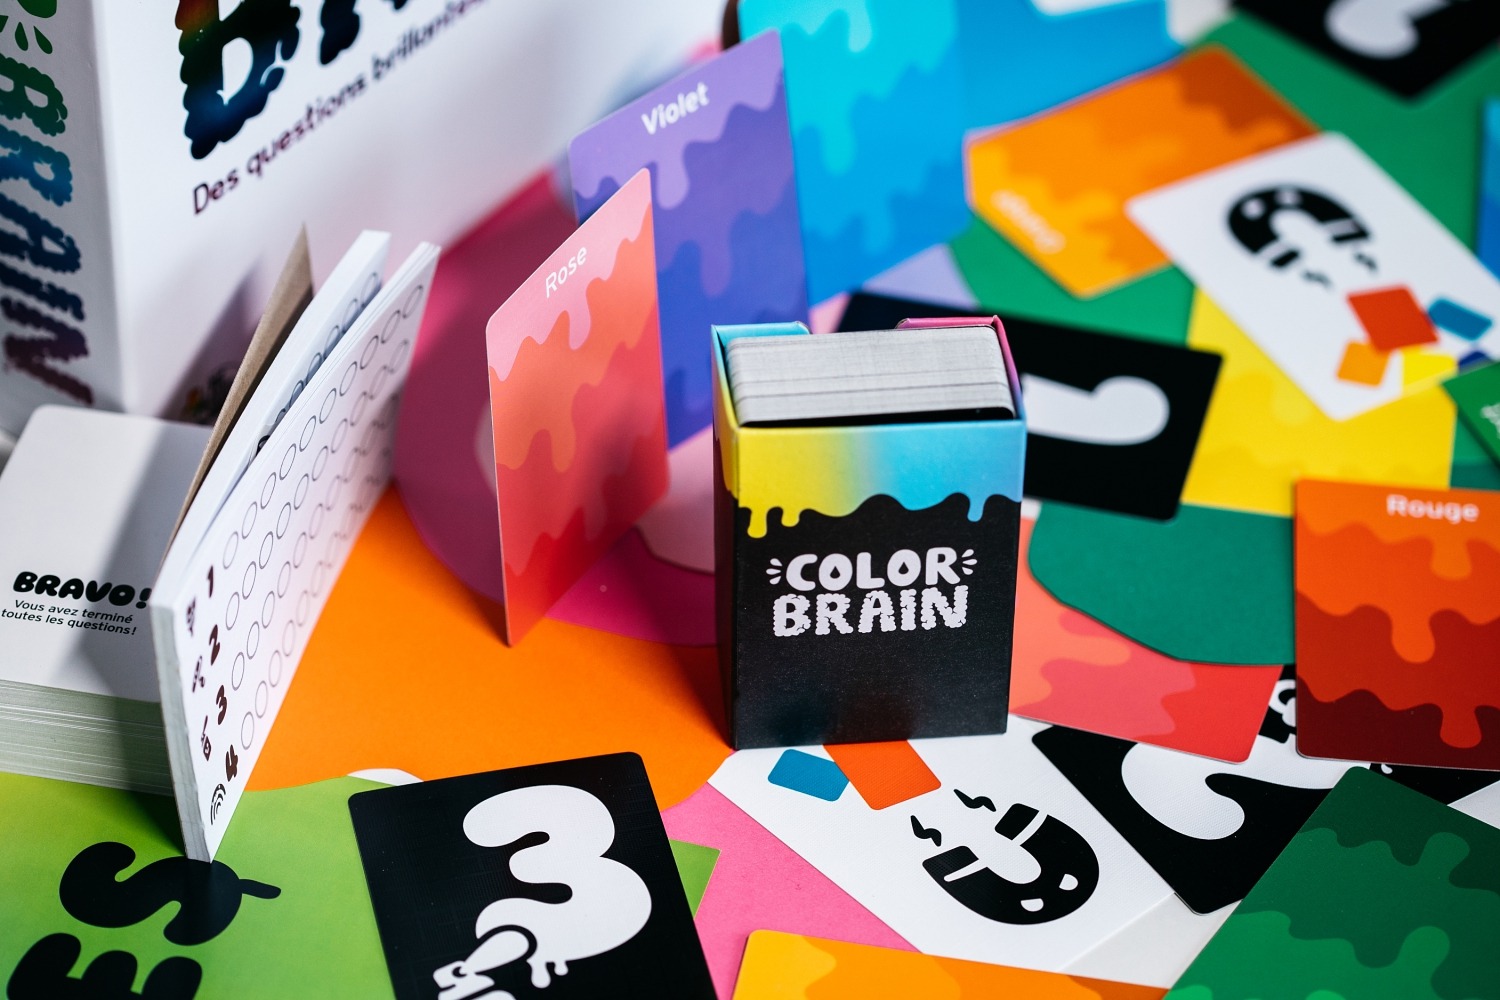 Color Brain Big potato games jeu quizz blackrock games